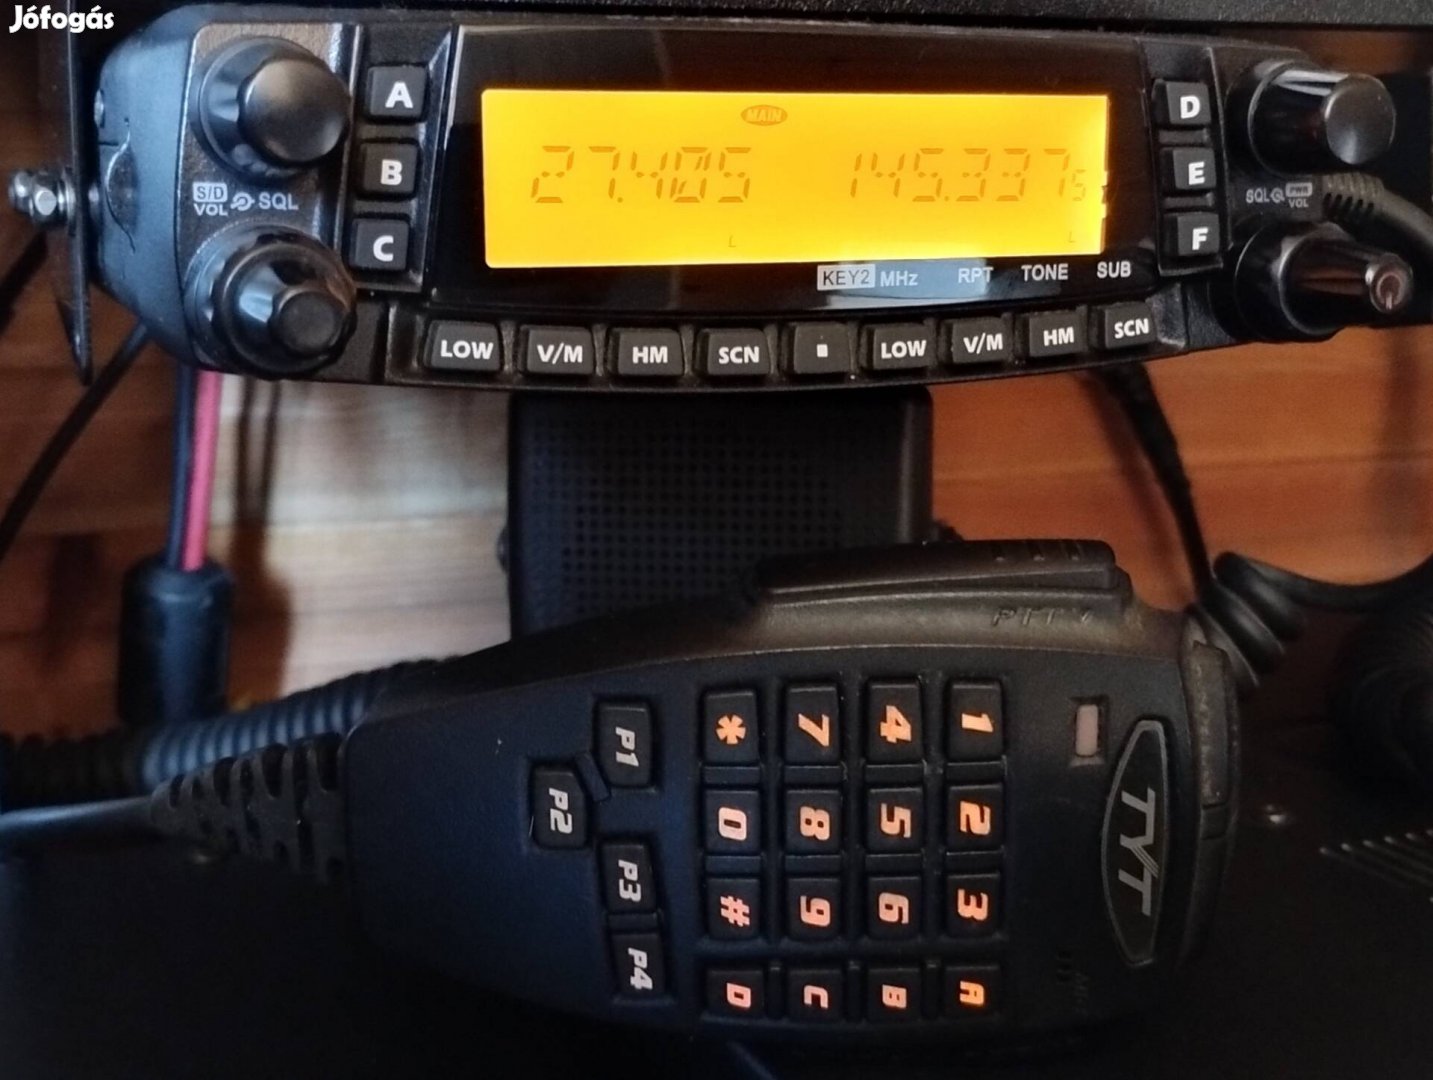 Tyt TH-9800 4 sávos urh rádió (cb sáv is)